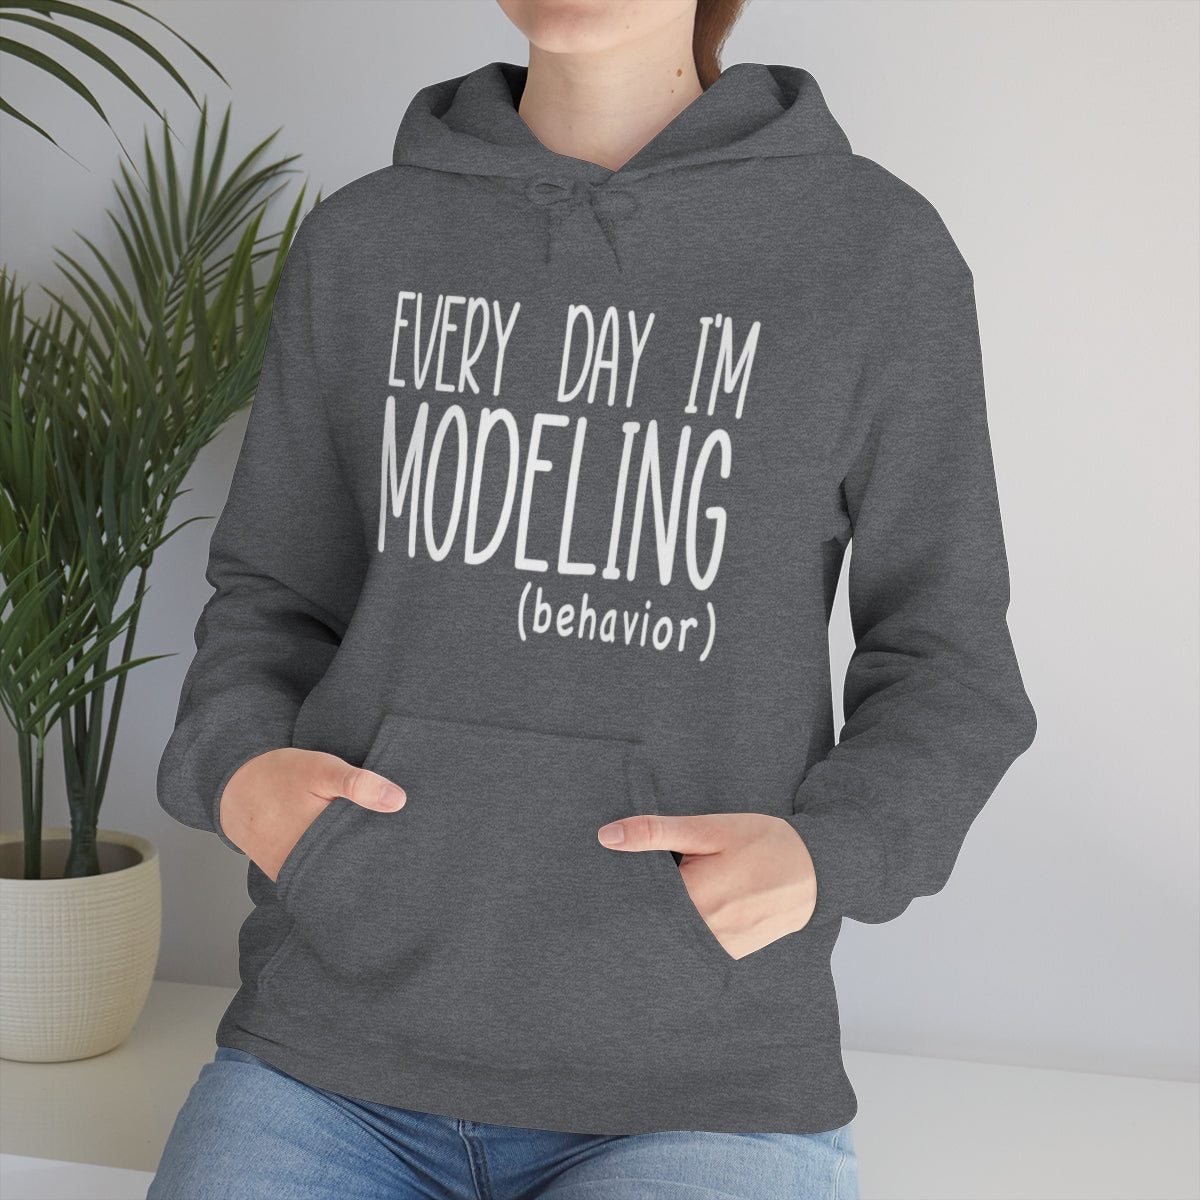 Modeling Hooded Sweatshirt | HRE Hoodie | ABA Hoodie | Behavior Technician Hoodie | Behavior Analyst Hoodie